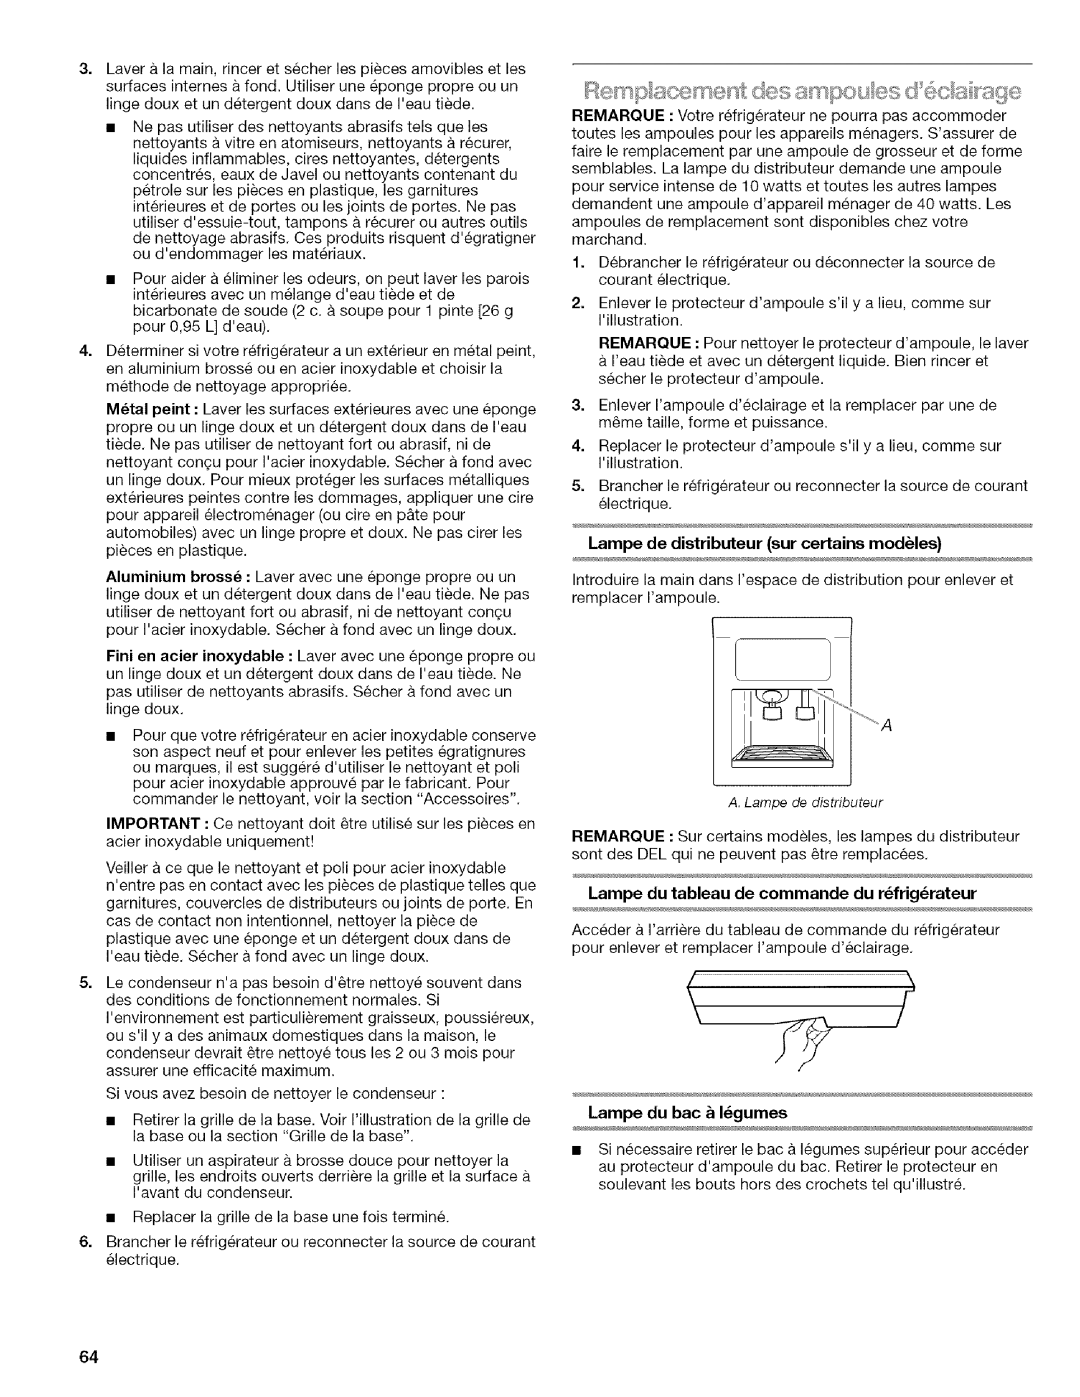 Kenmore WIOI67097A manual Lampe de distributeur sur certains modules, Lampe du bac & I_gumes 